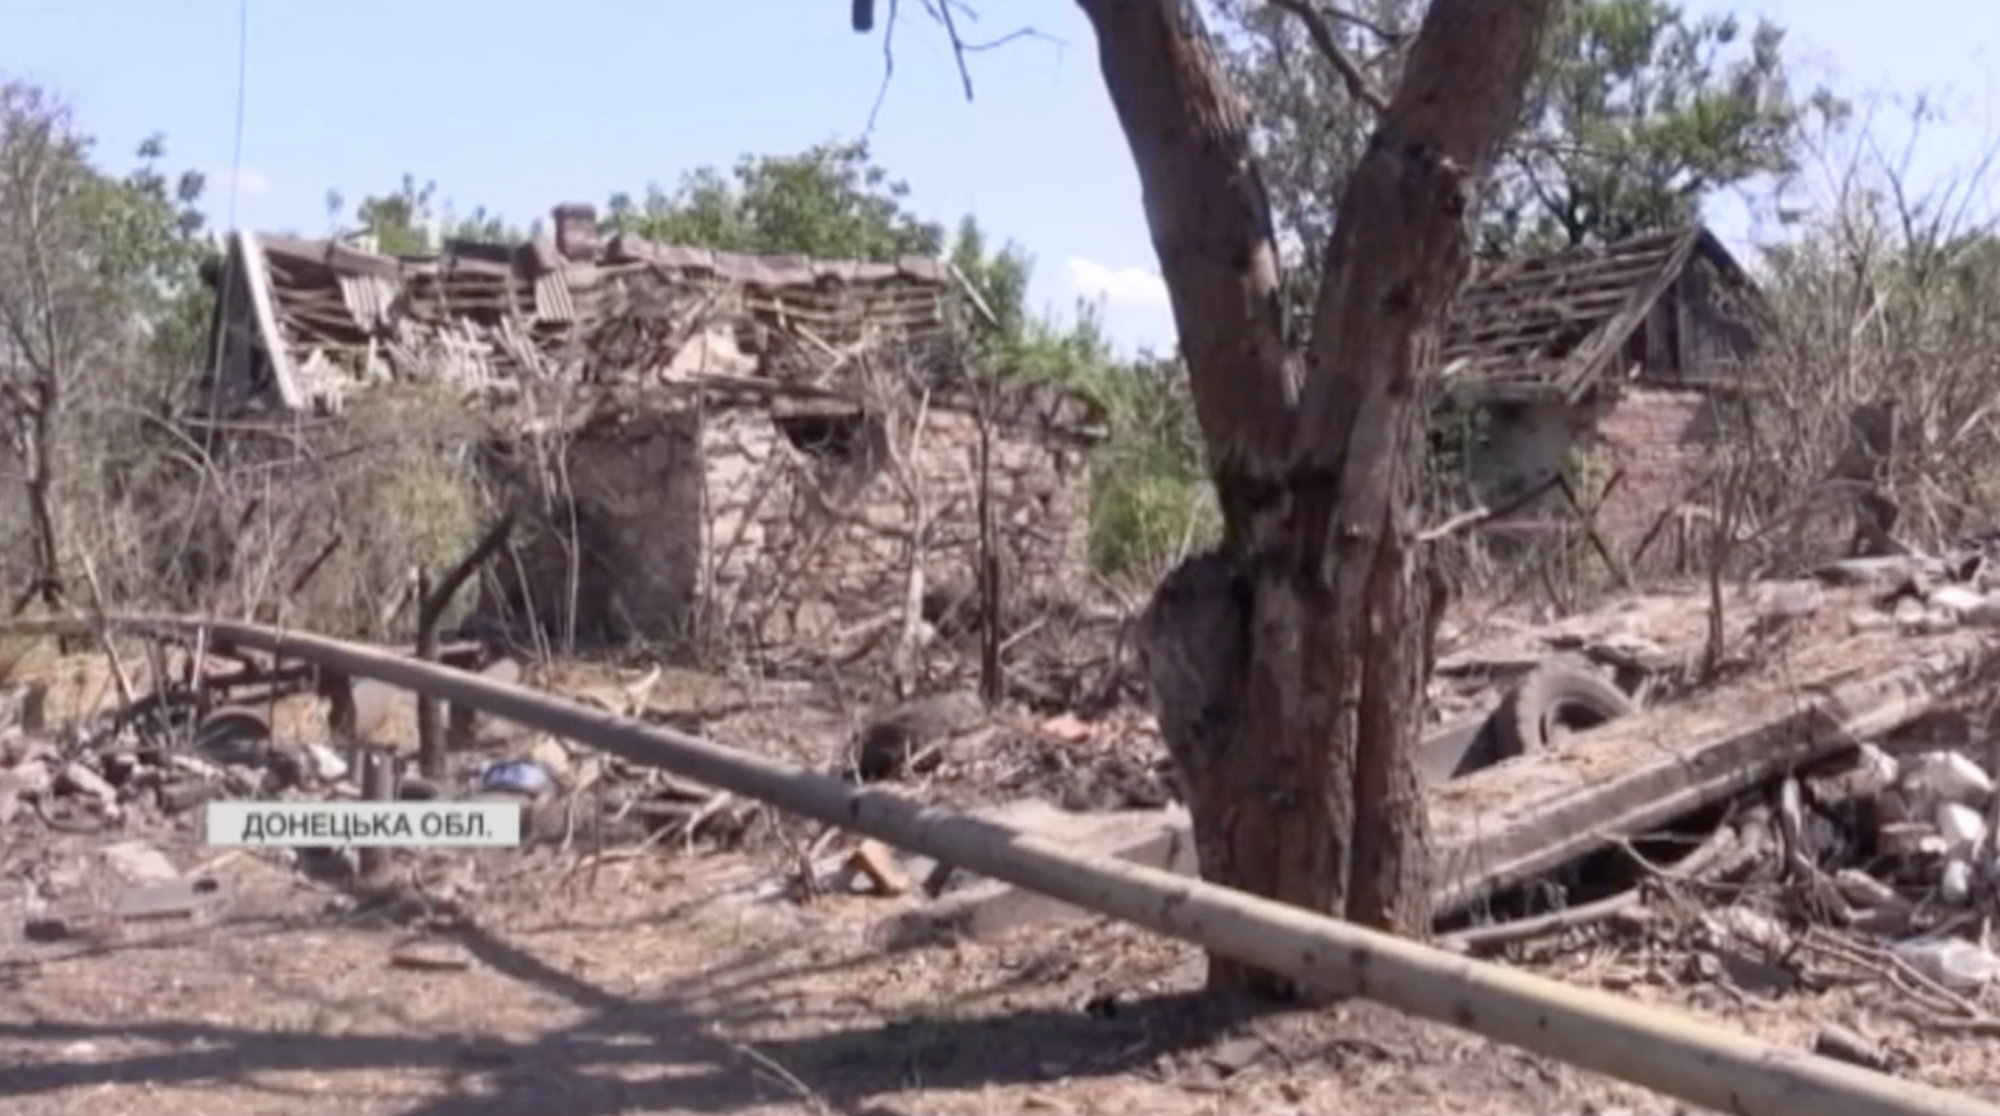 Розбиті будинки і безлюдні вулиці: який вигляд має прифронтове селище Нью-Йорк на Донбасі. Відео